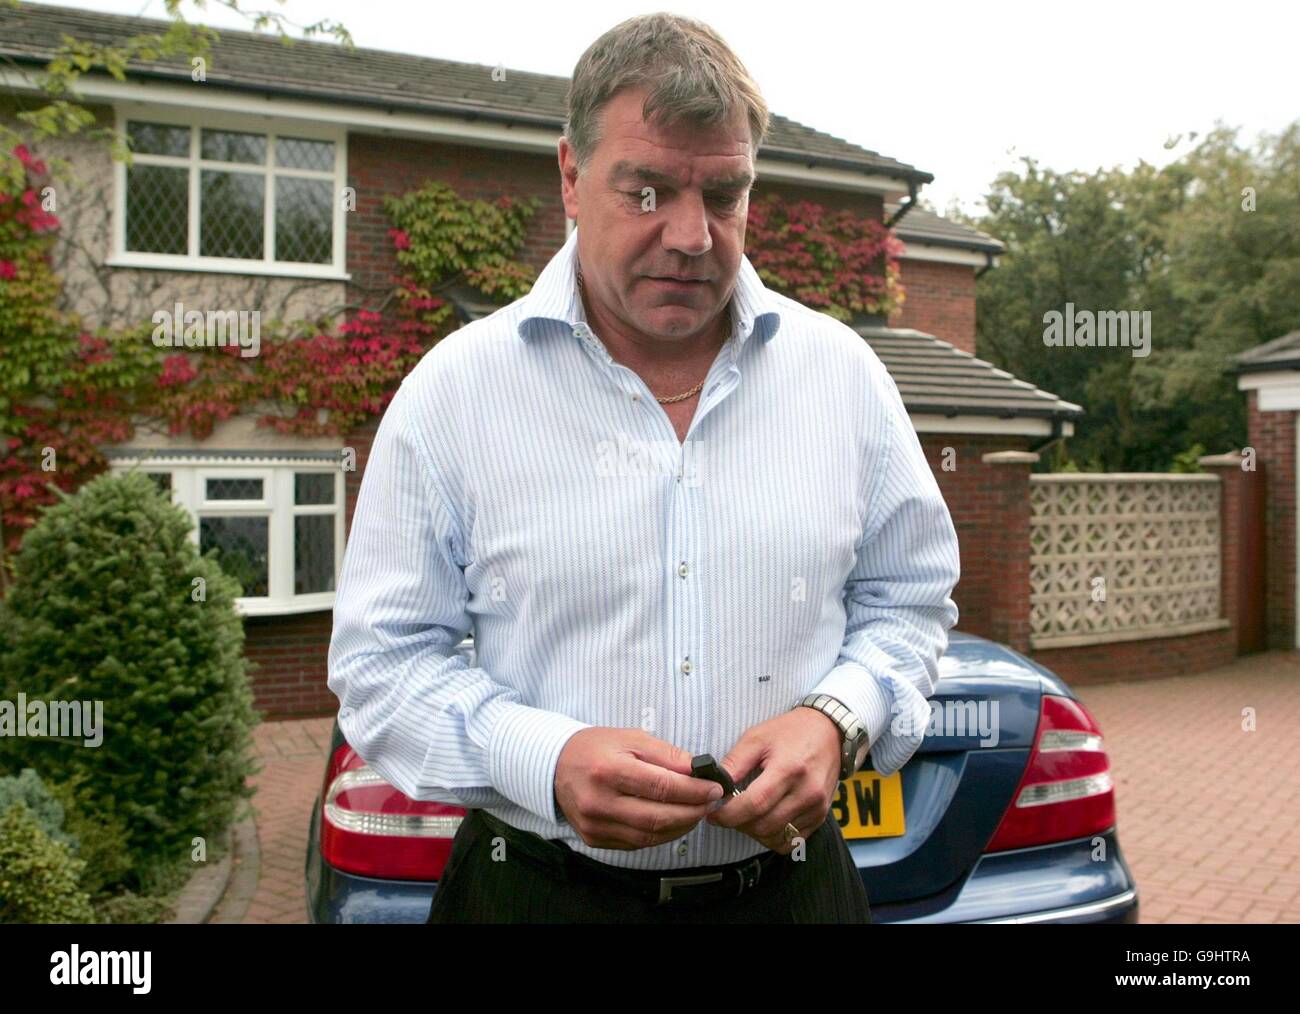 Sam Allardyce, le Manager de Bolton Wanderers, parle à la presse à l'extérieur de son domicile à Bromley Cross, Bolton, après que l'Association de football a promis une enquête « exhaustive et approfondie » sur les allégations de haut niveau de « petits pains » dans les transferts de joueurs. Banque D'Images